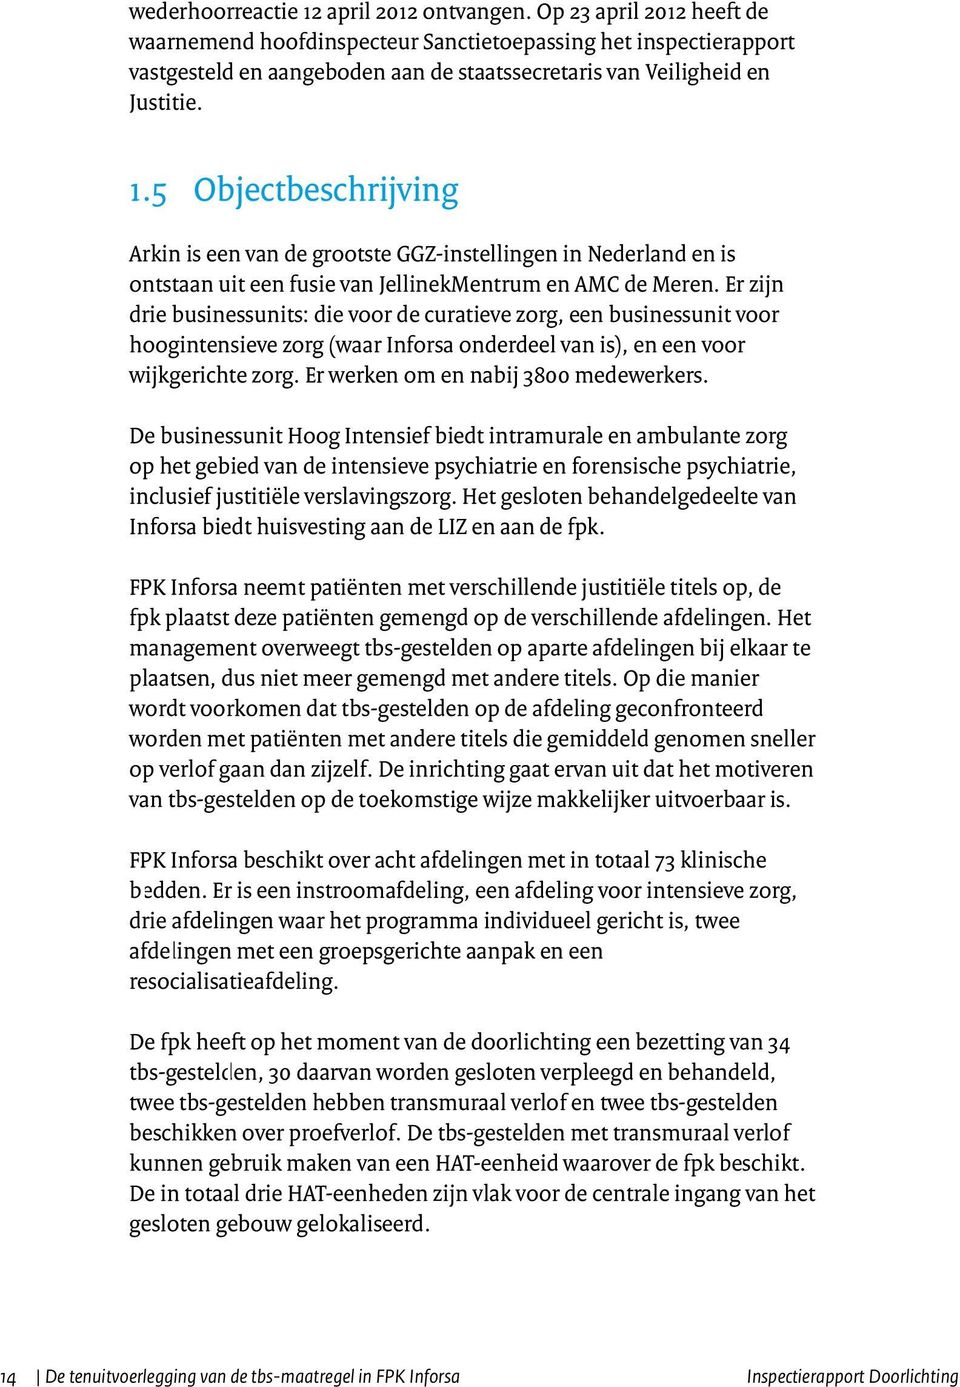 5 Objectbeschrijving Arkin is een van de grootste GGZ-instellingen in Nederland en is ontstaan uit een fusie van JellinekMentrum en AMC de Meren.